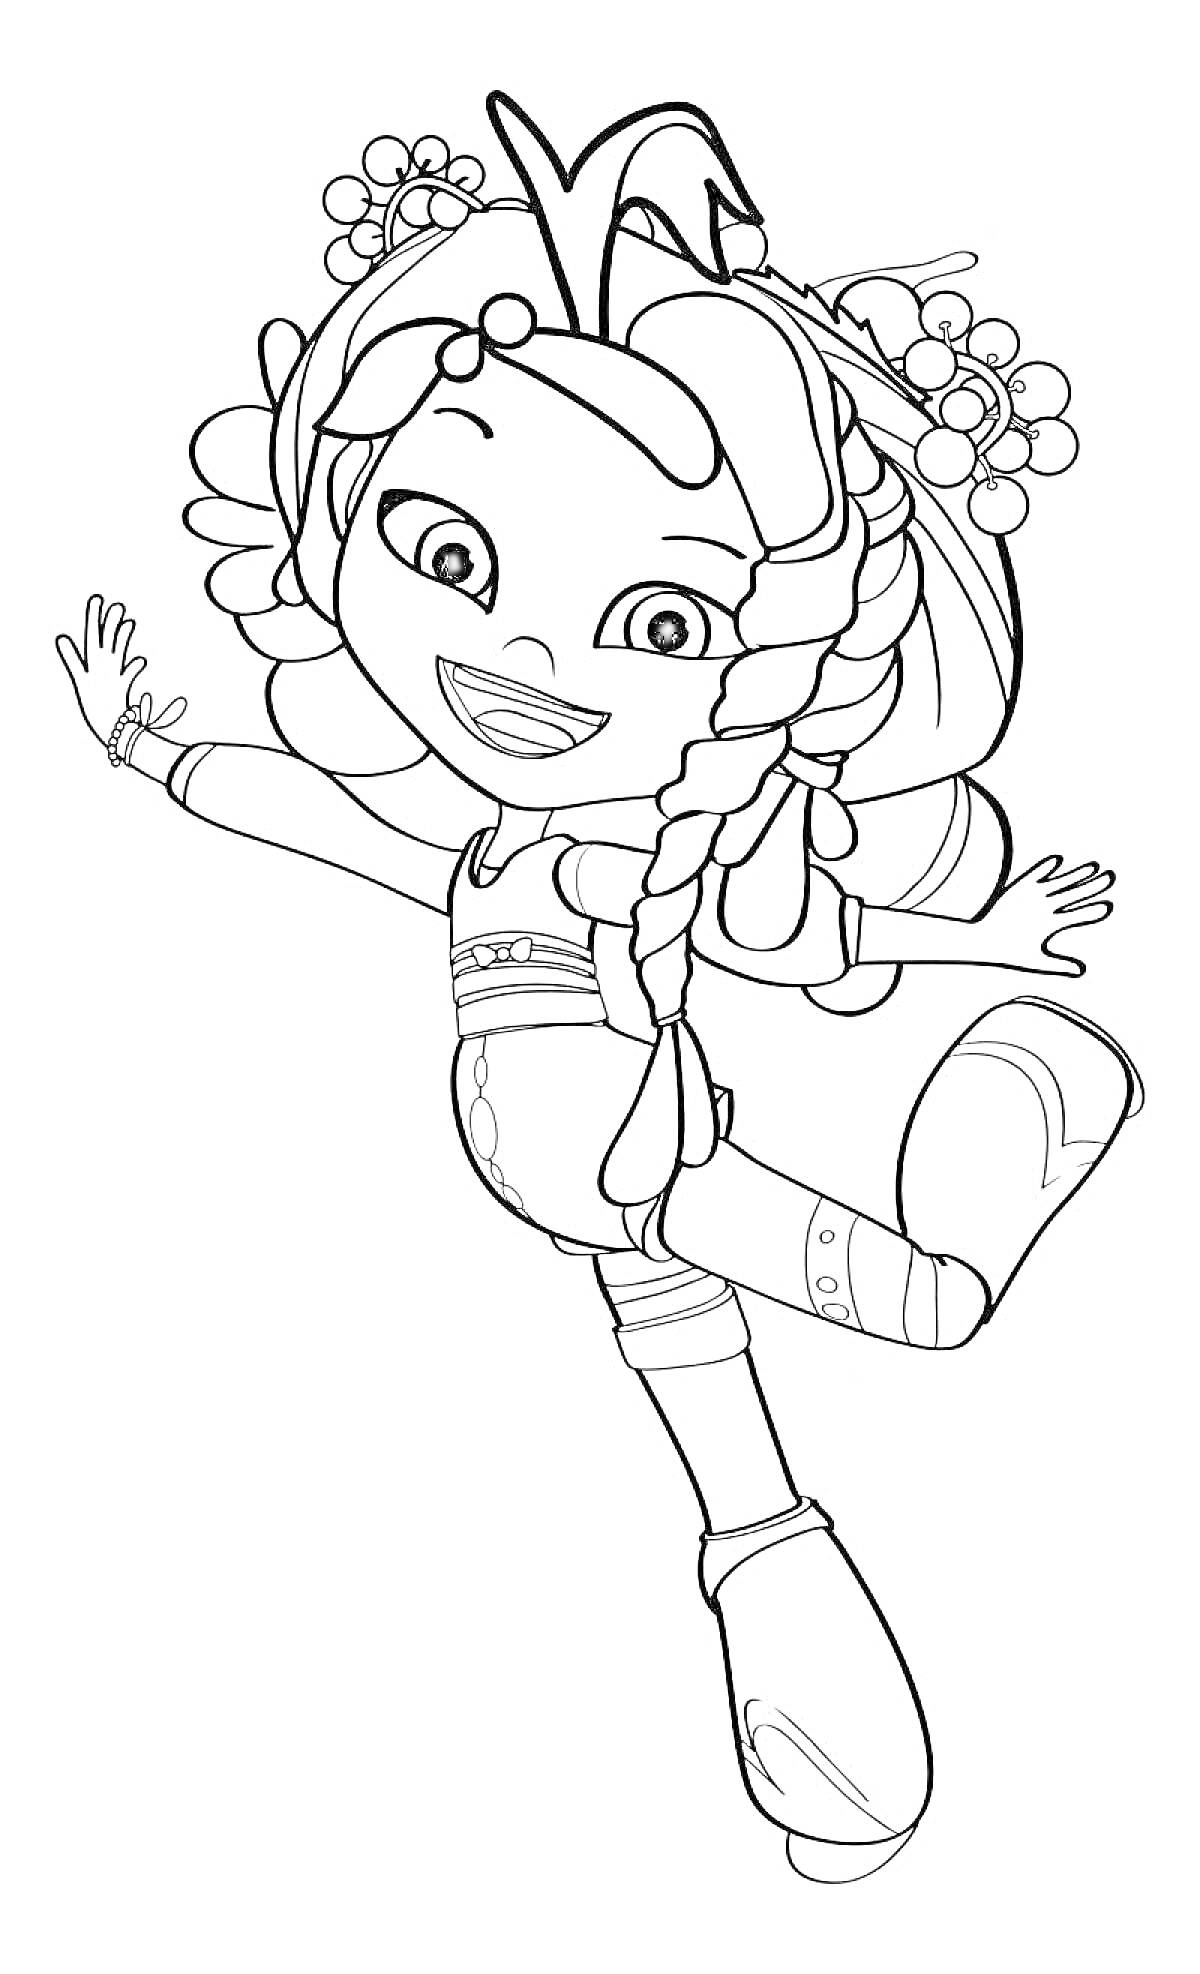 Раскраска Девочка с косичками, цветами в волосах и большим бантом в прыжке